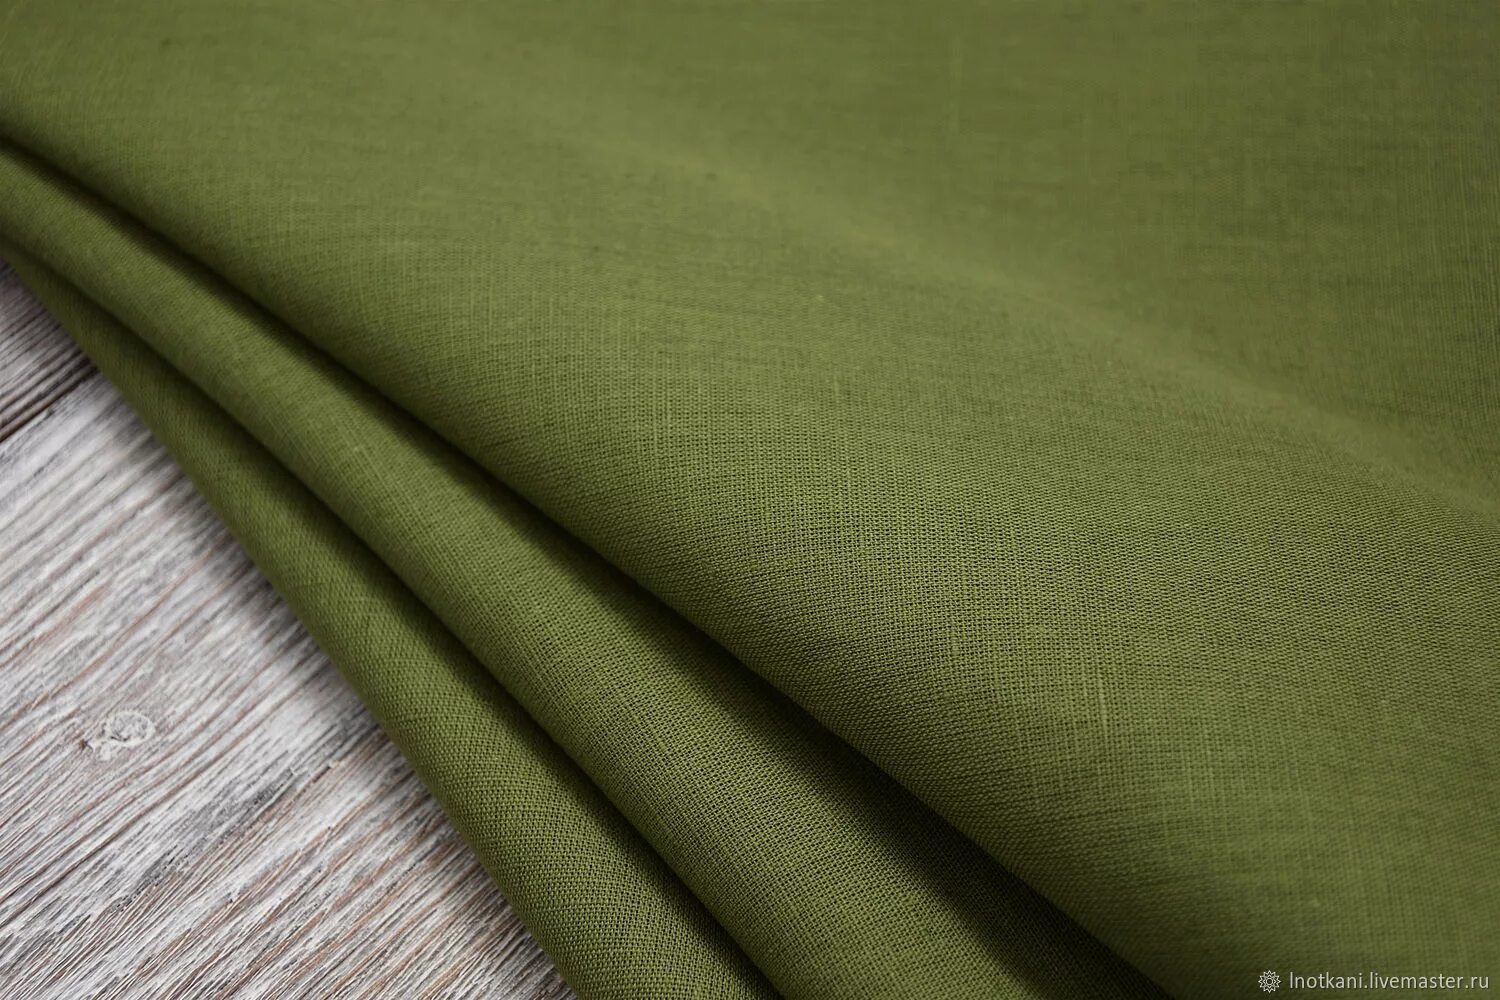 Ткань Энигма белорусский лен. Сукно зеленое белорусское. Зеленая холщовая ткань. Лен вуаль Белоруссия зеленый.